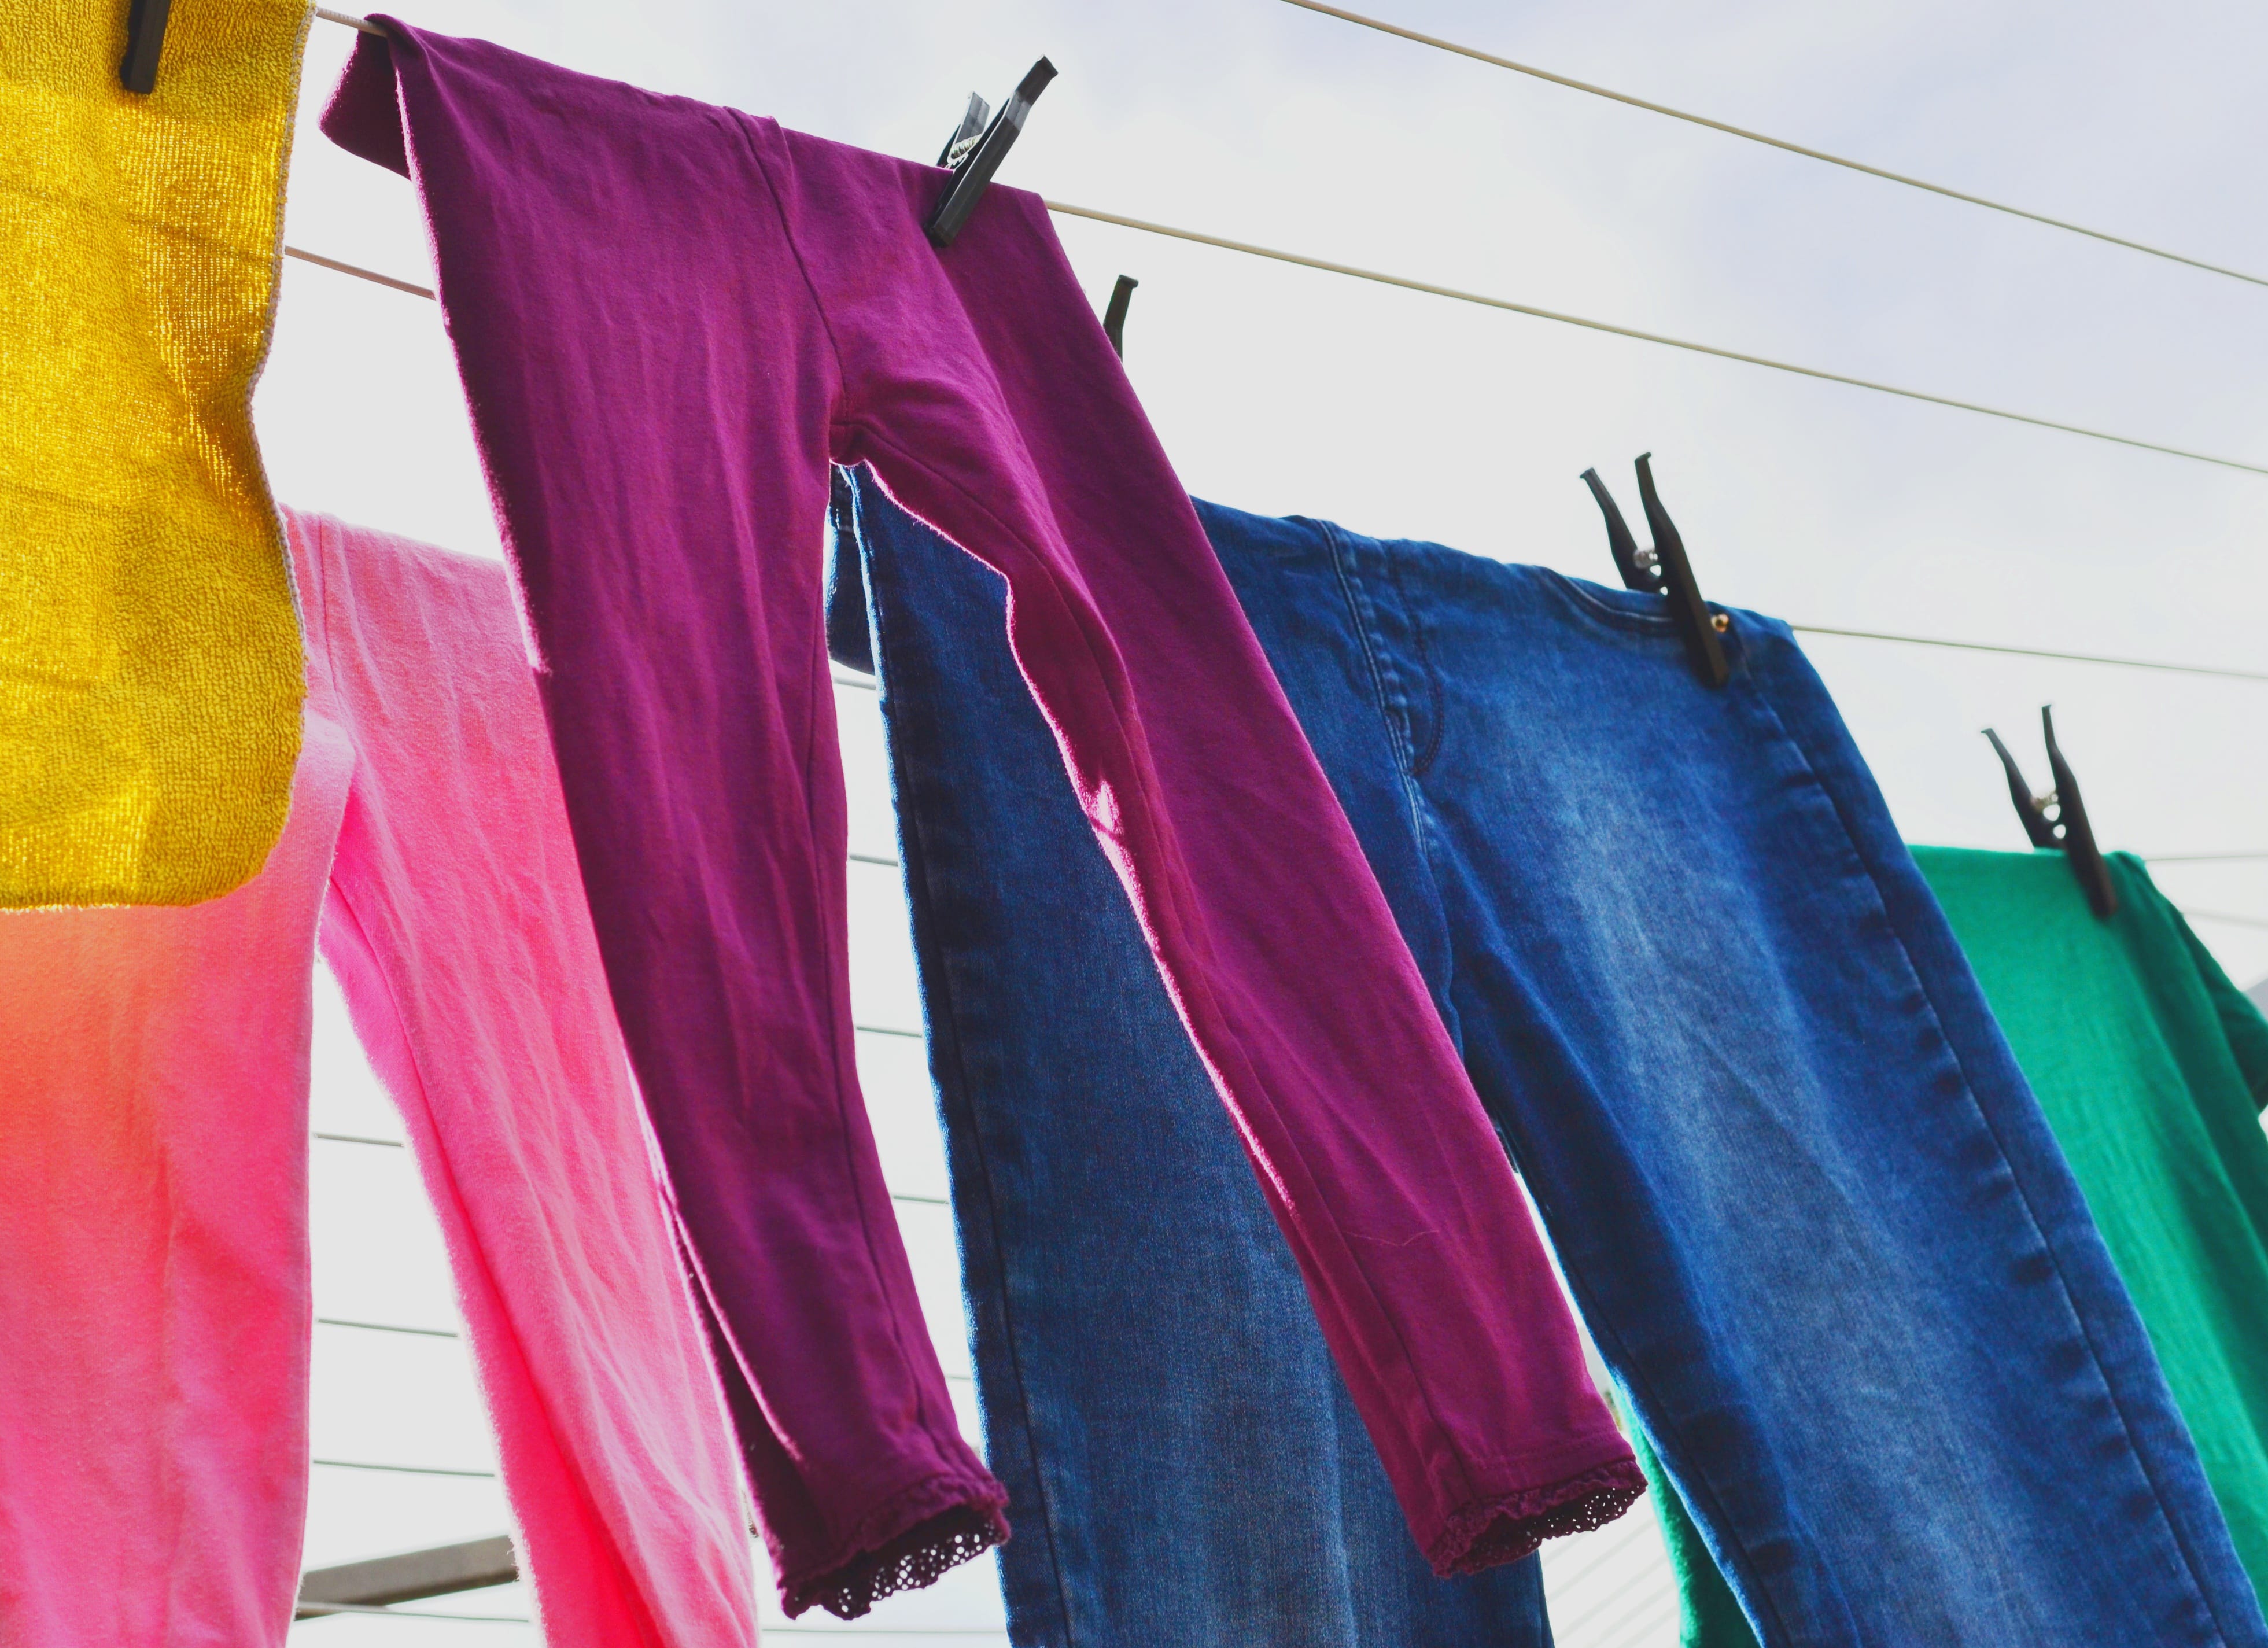 Hosen waschen – 11 Tipps die Sie beachten sollten